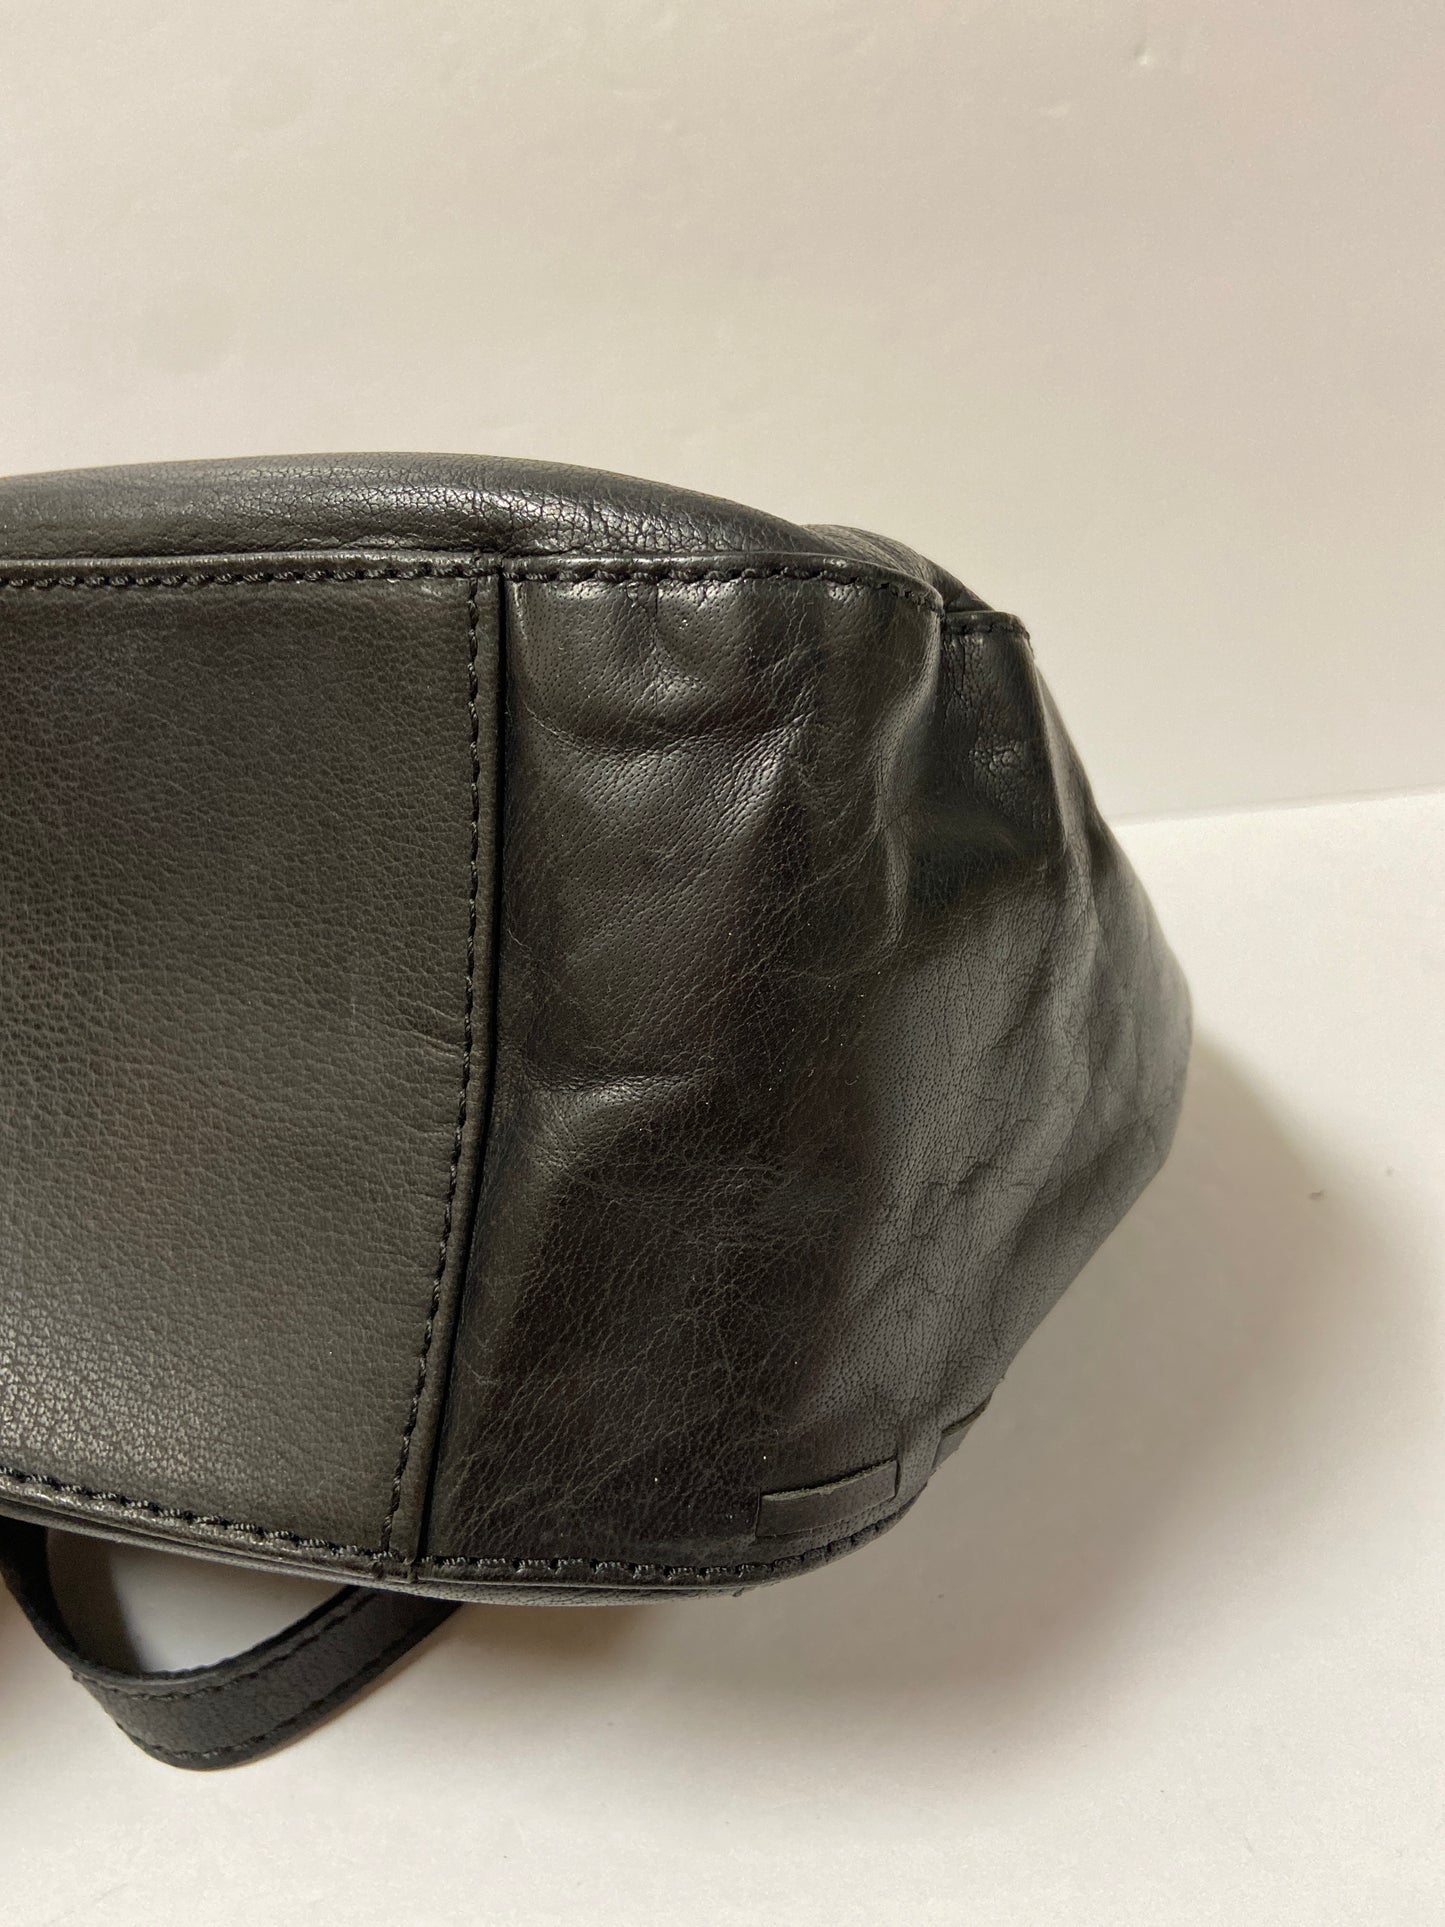 Handbag Designer By Born  Size: Medium